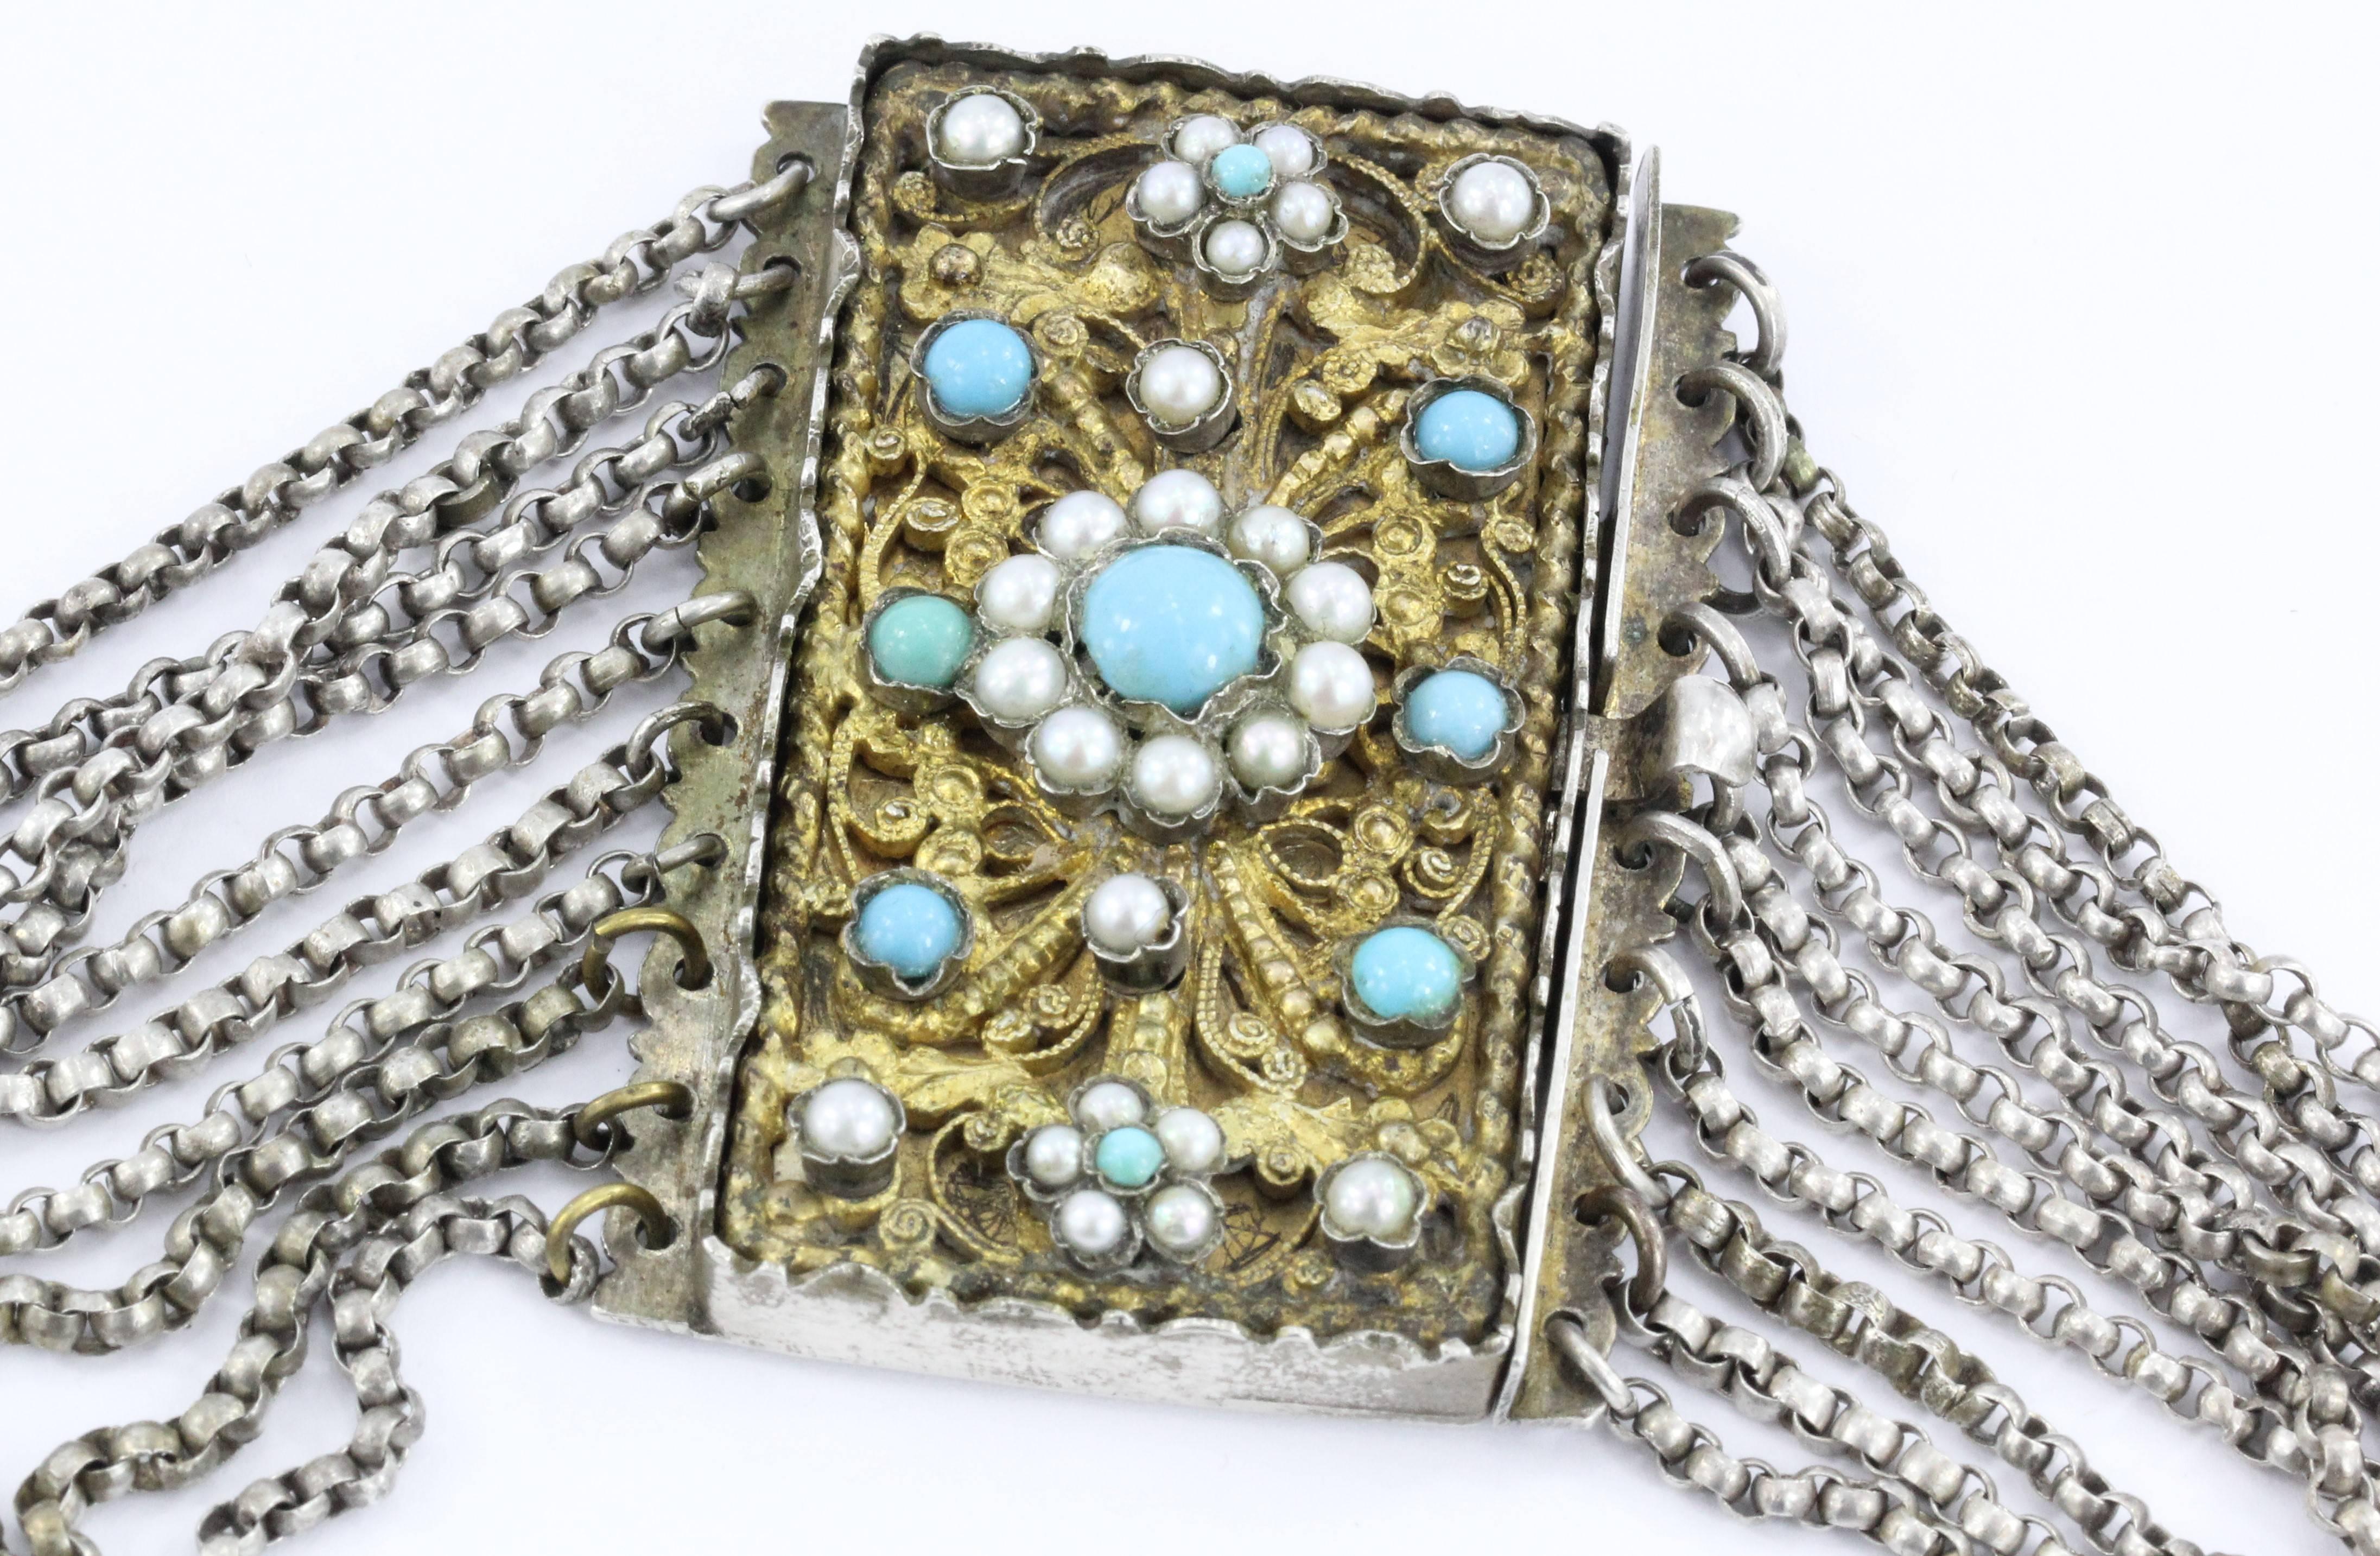 1840s jewelry